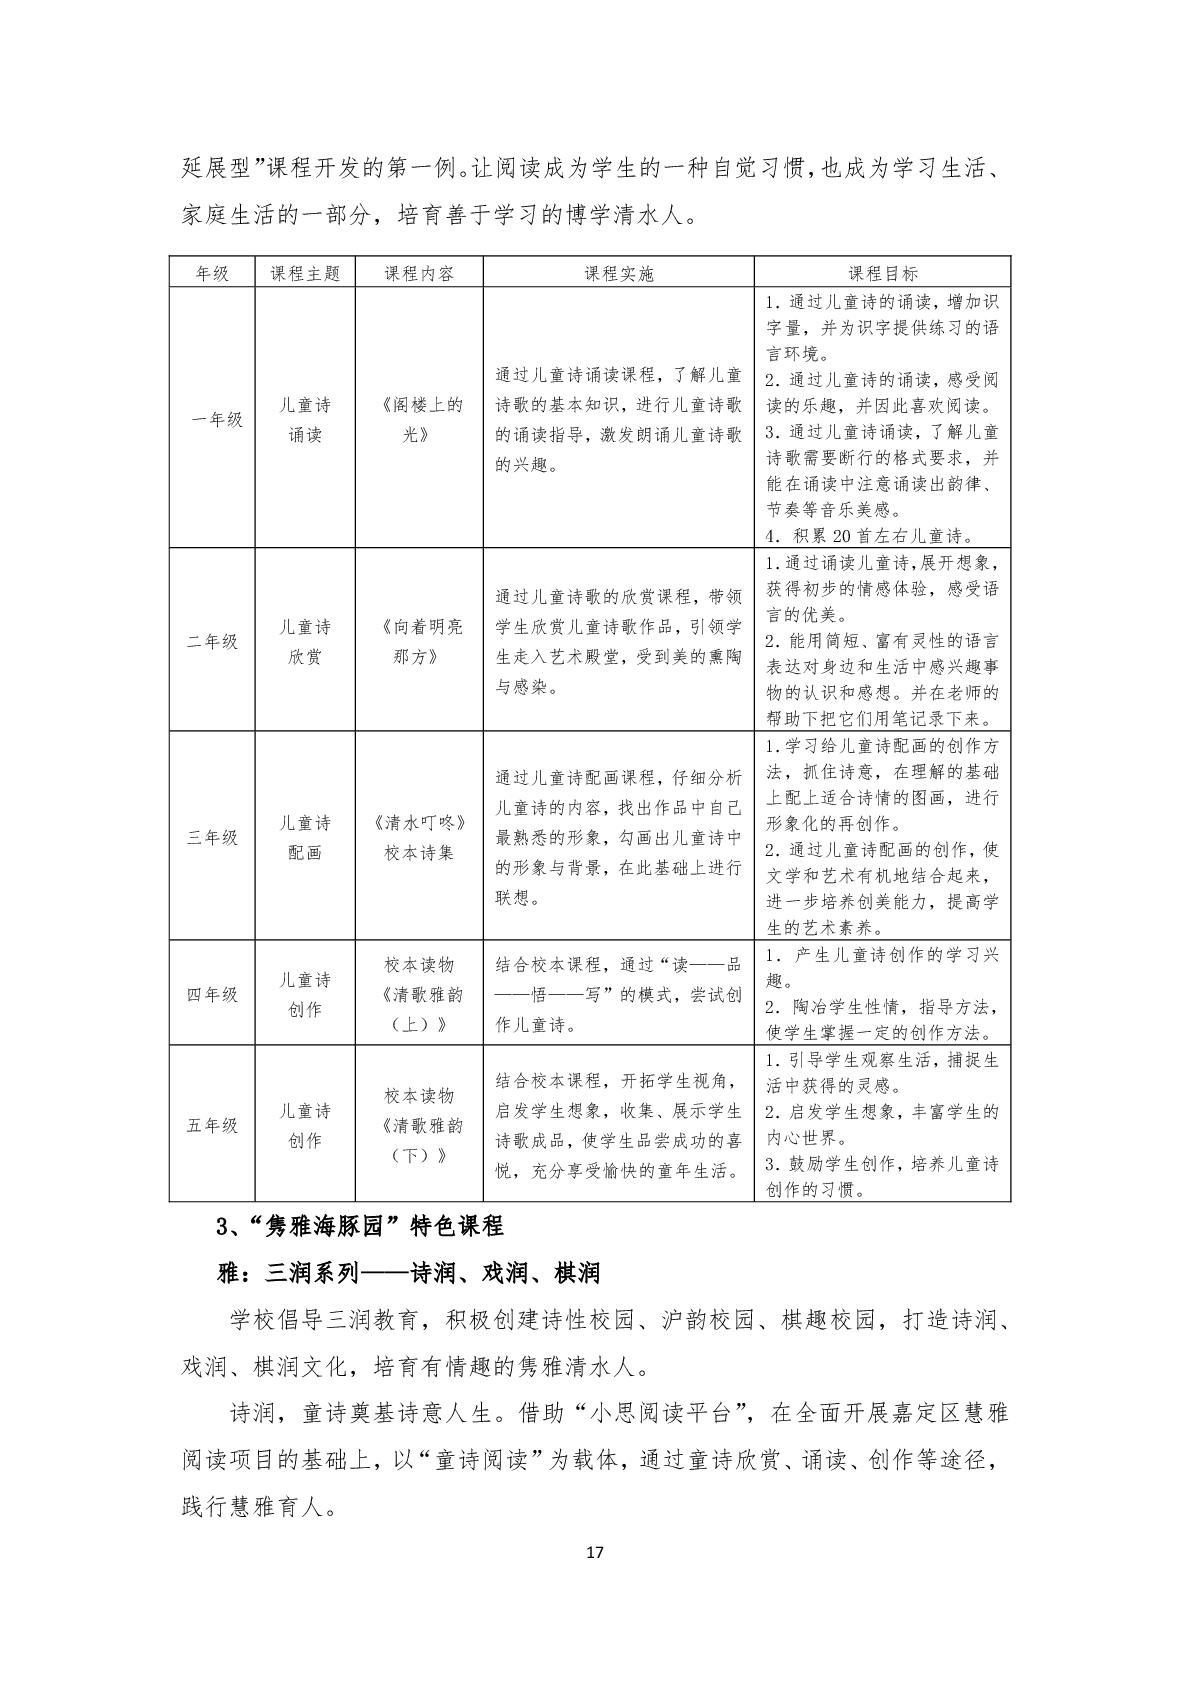 2.上海市嘉定区清水路小学2020学年度课程计划-017.jpg